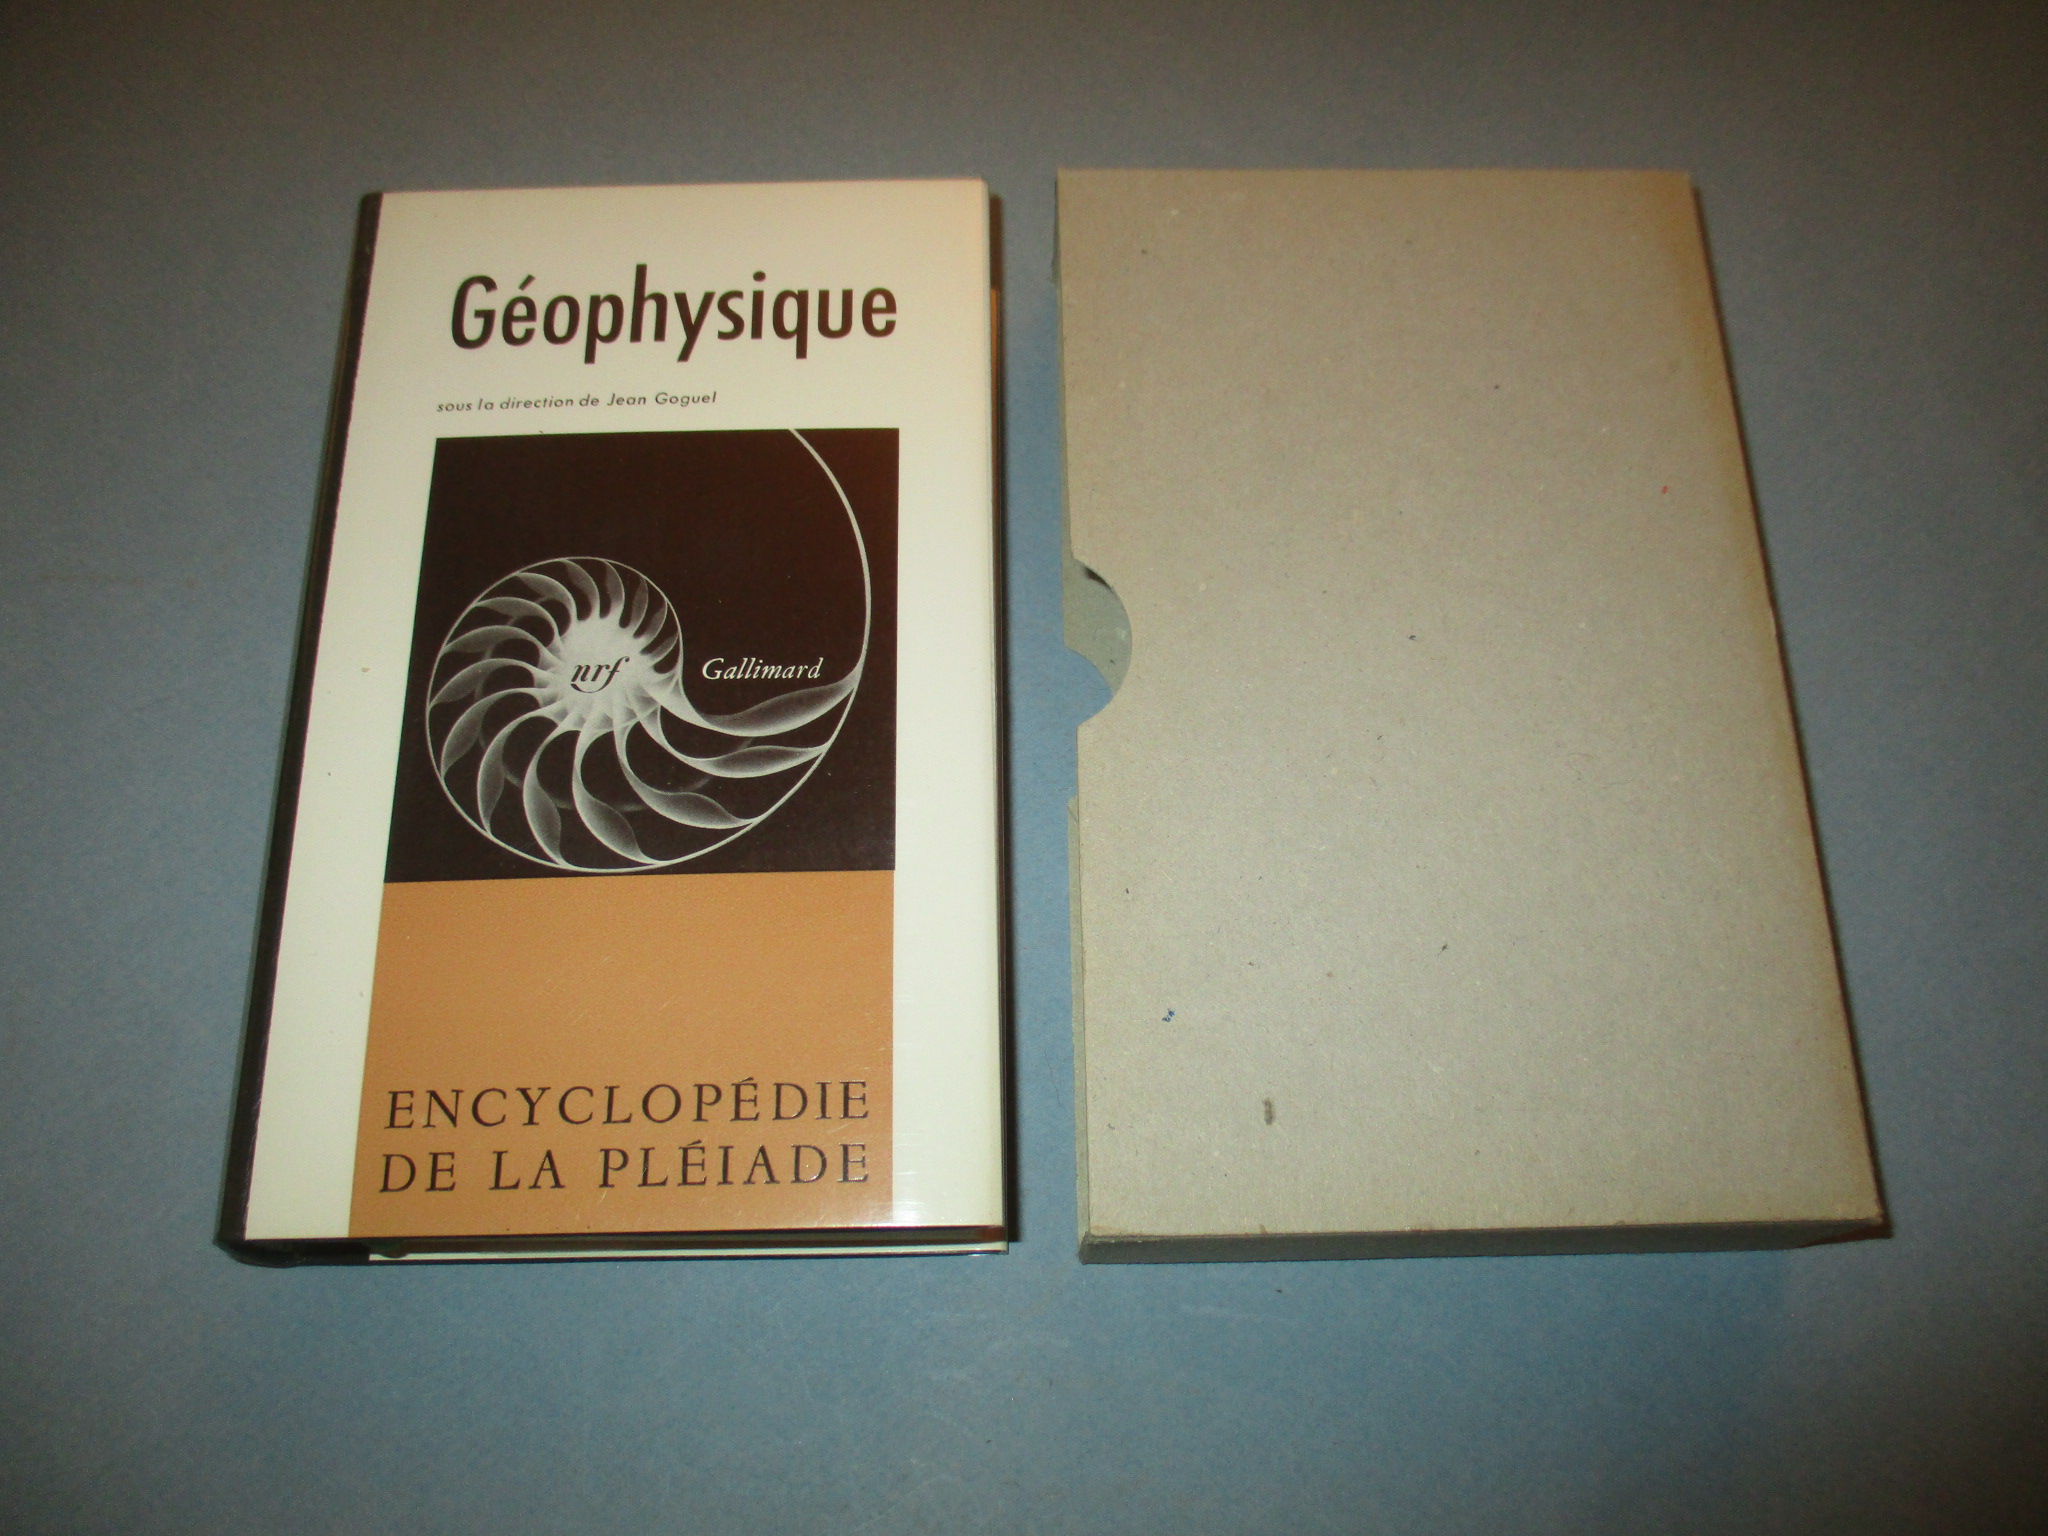 Géophysique, Encyclopédie de la Pléiade 1971